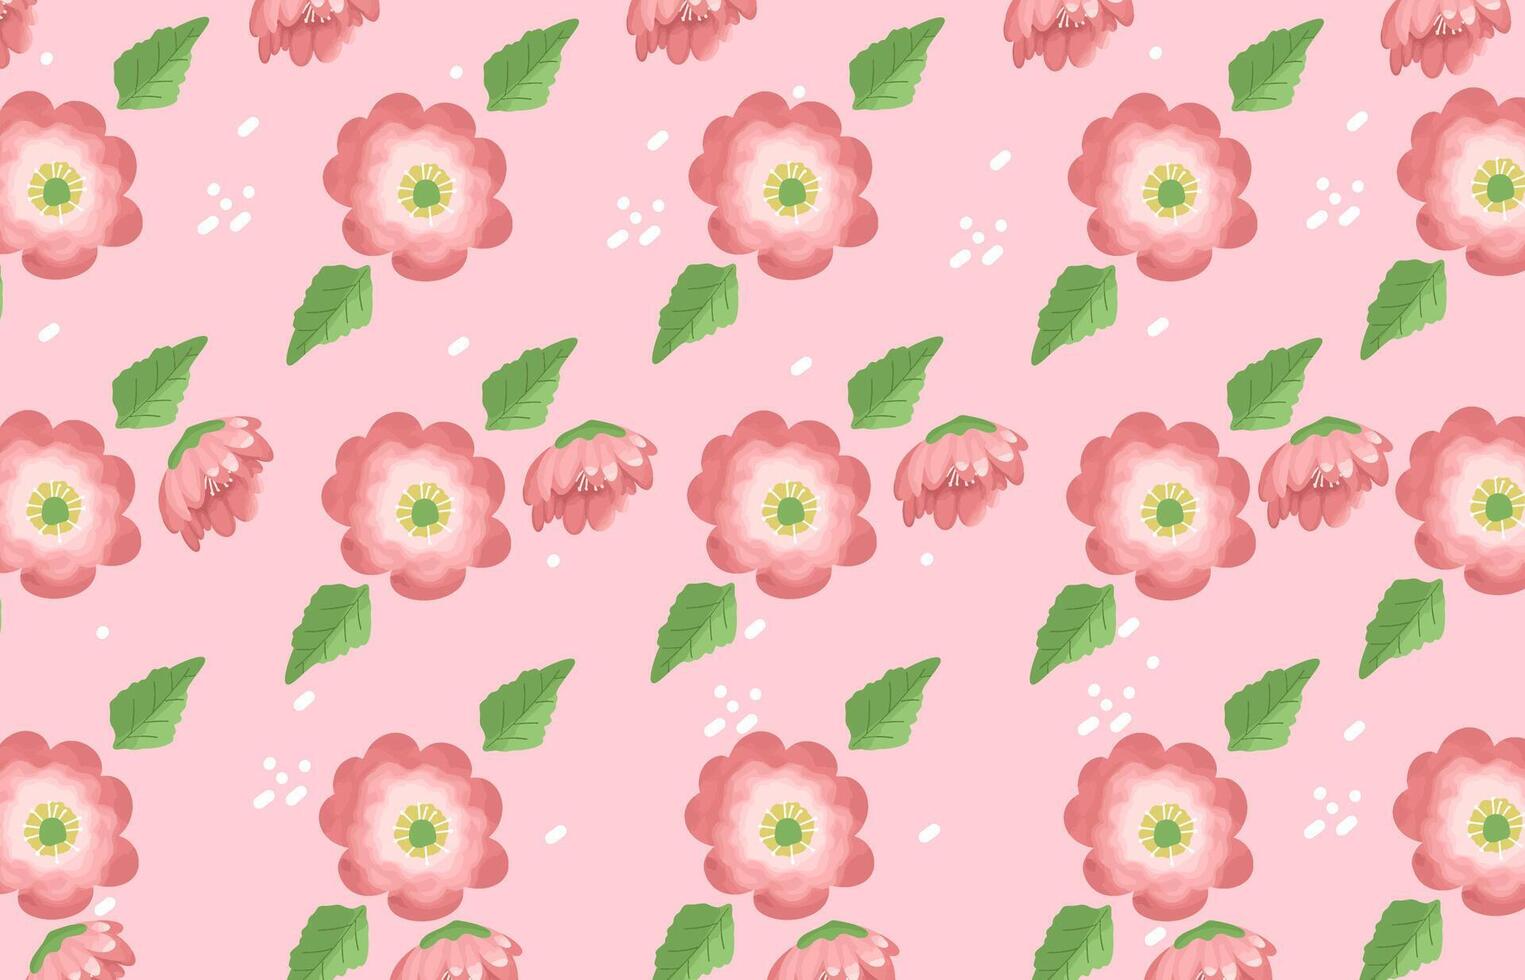 desatado Rosa cereja Flor floral Flor padronizar com aguarela estilo para tecido, têxtil, papel de parede, parede decoração, embalagem projeto, invólucro papel, papel de parede vetor